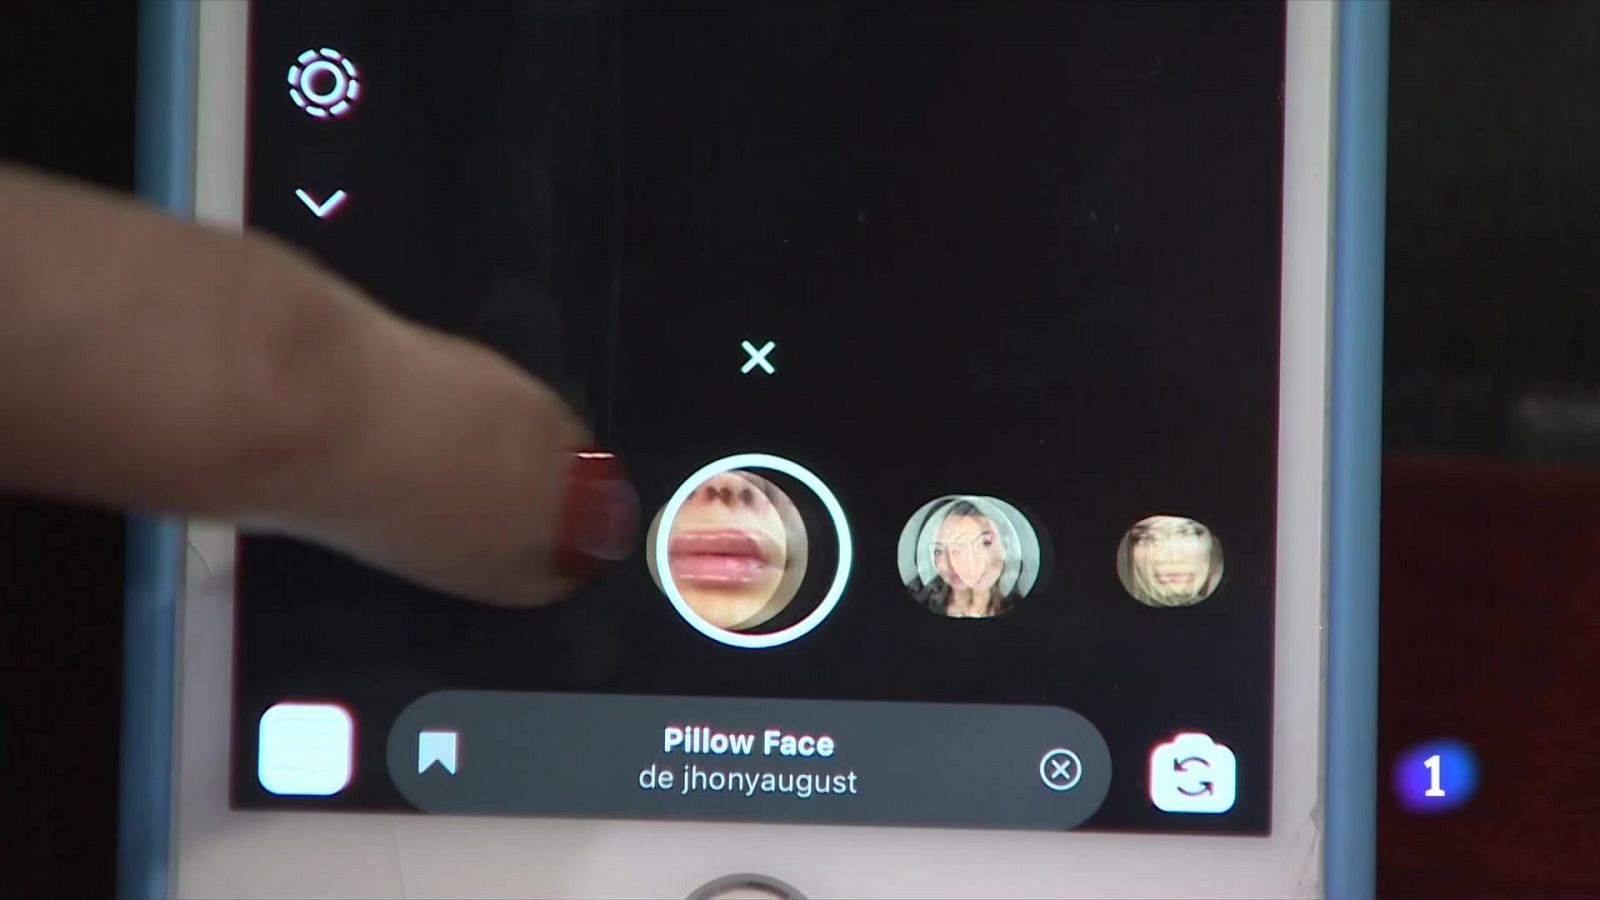 Noies menors de 25 anys que volen aconseguir tenir el rostre dels filtres d'Instagram